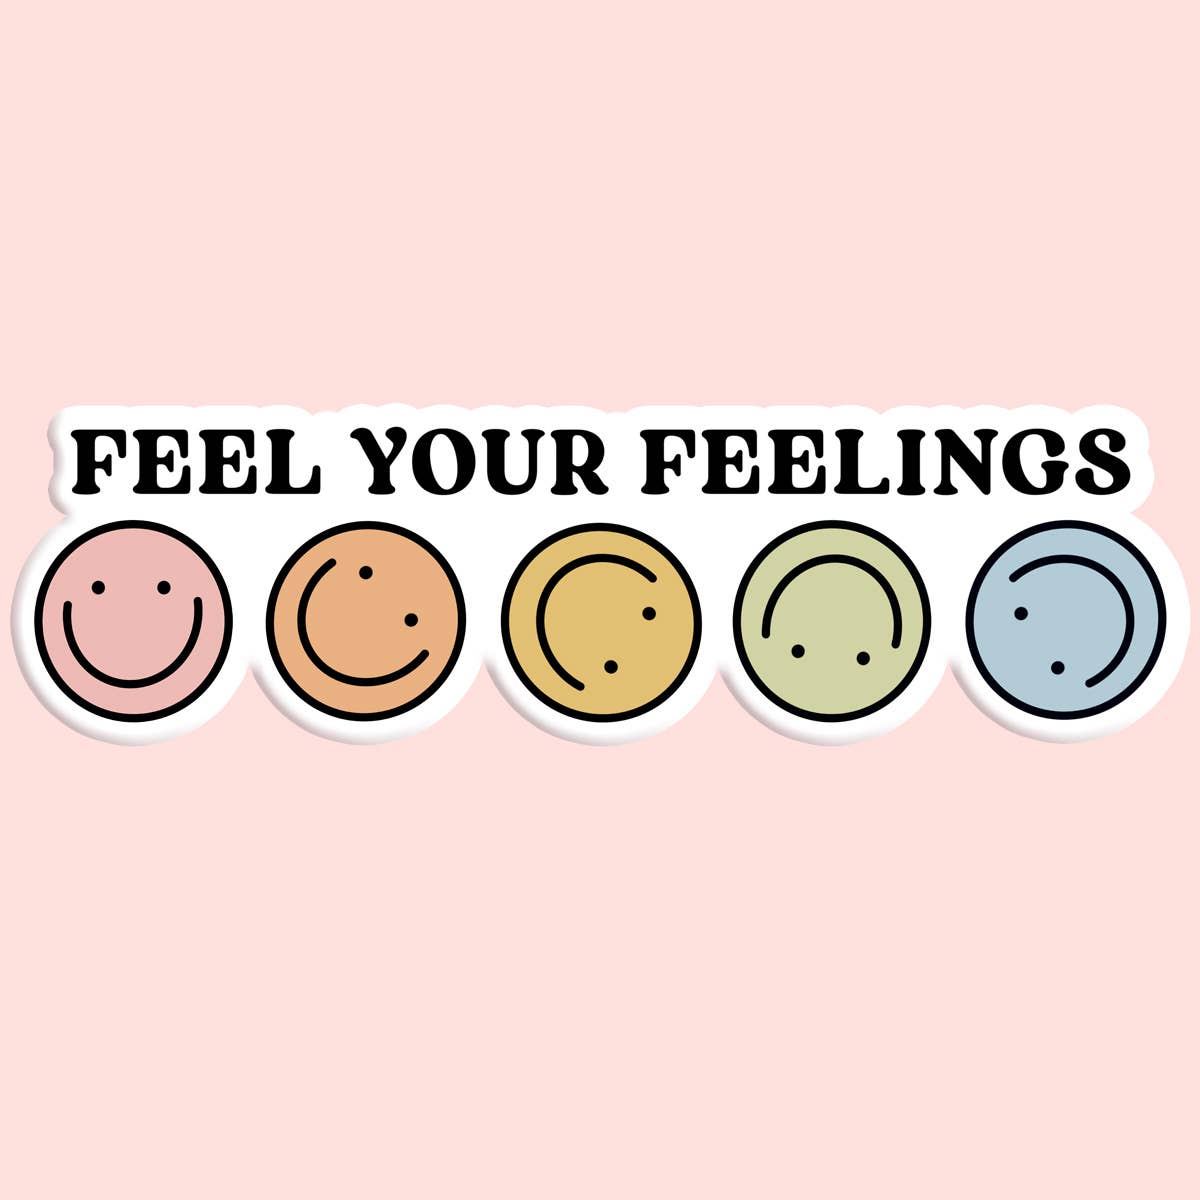 Feel Your Feelings Sticker Decal